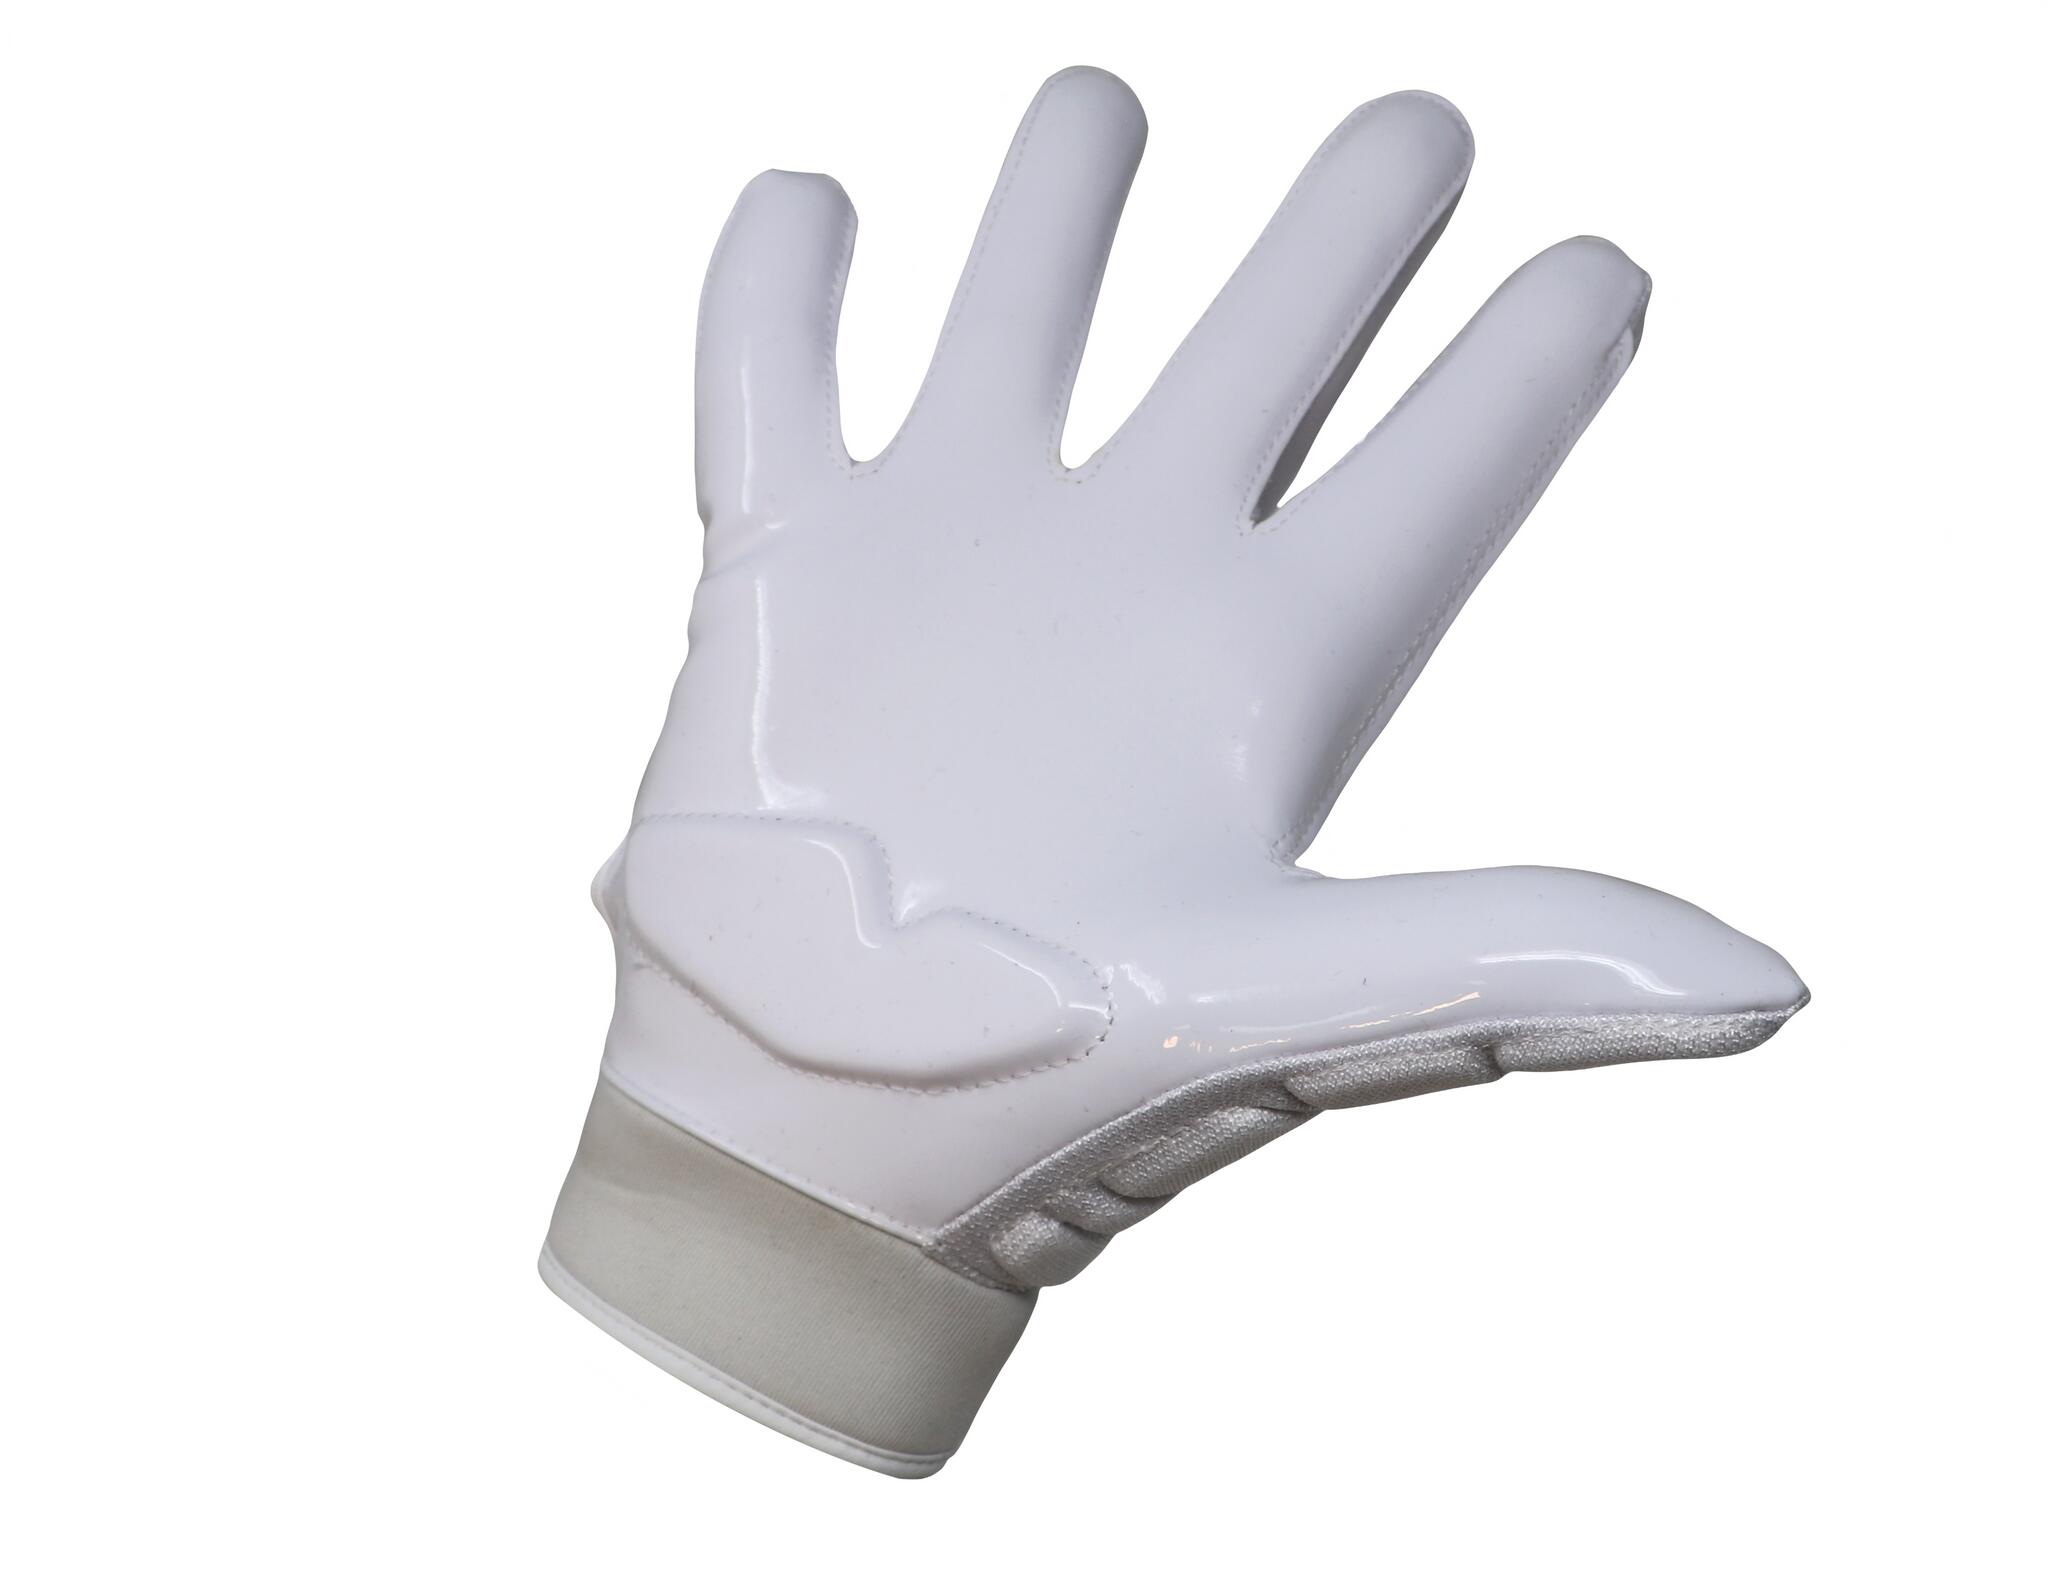  pro linemen american football gloves, OL,DL, White FLG-03 2/3